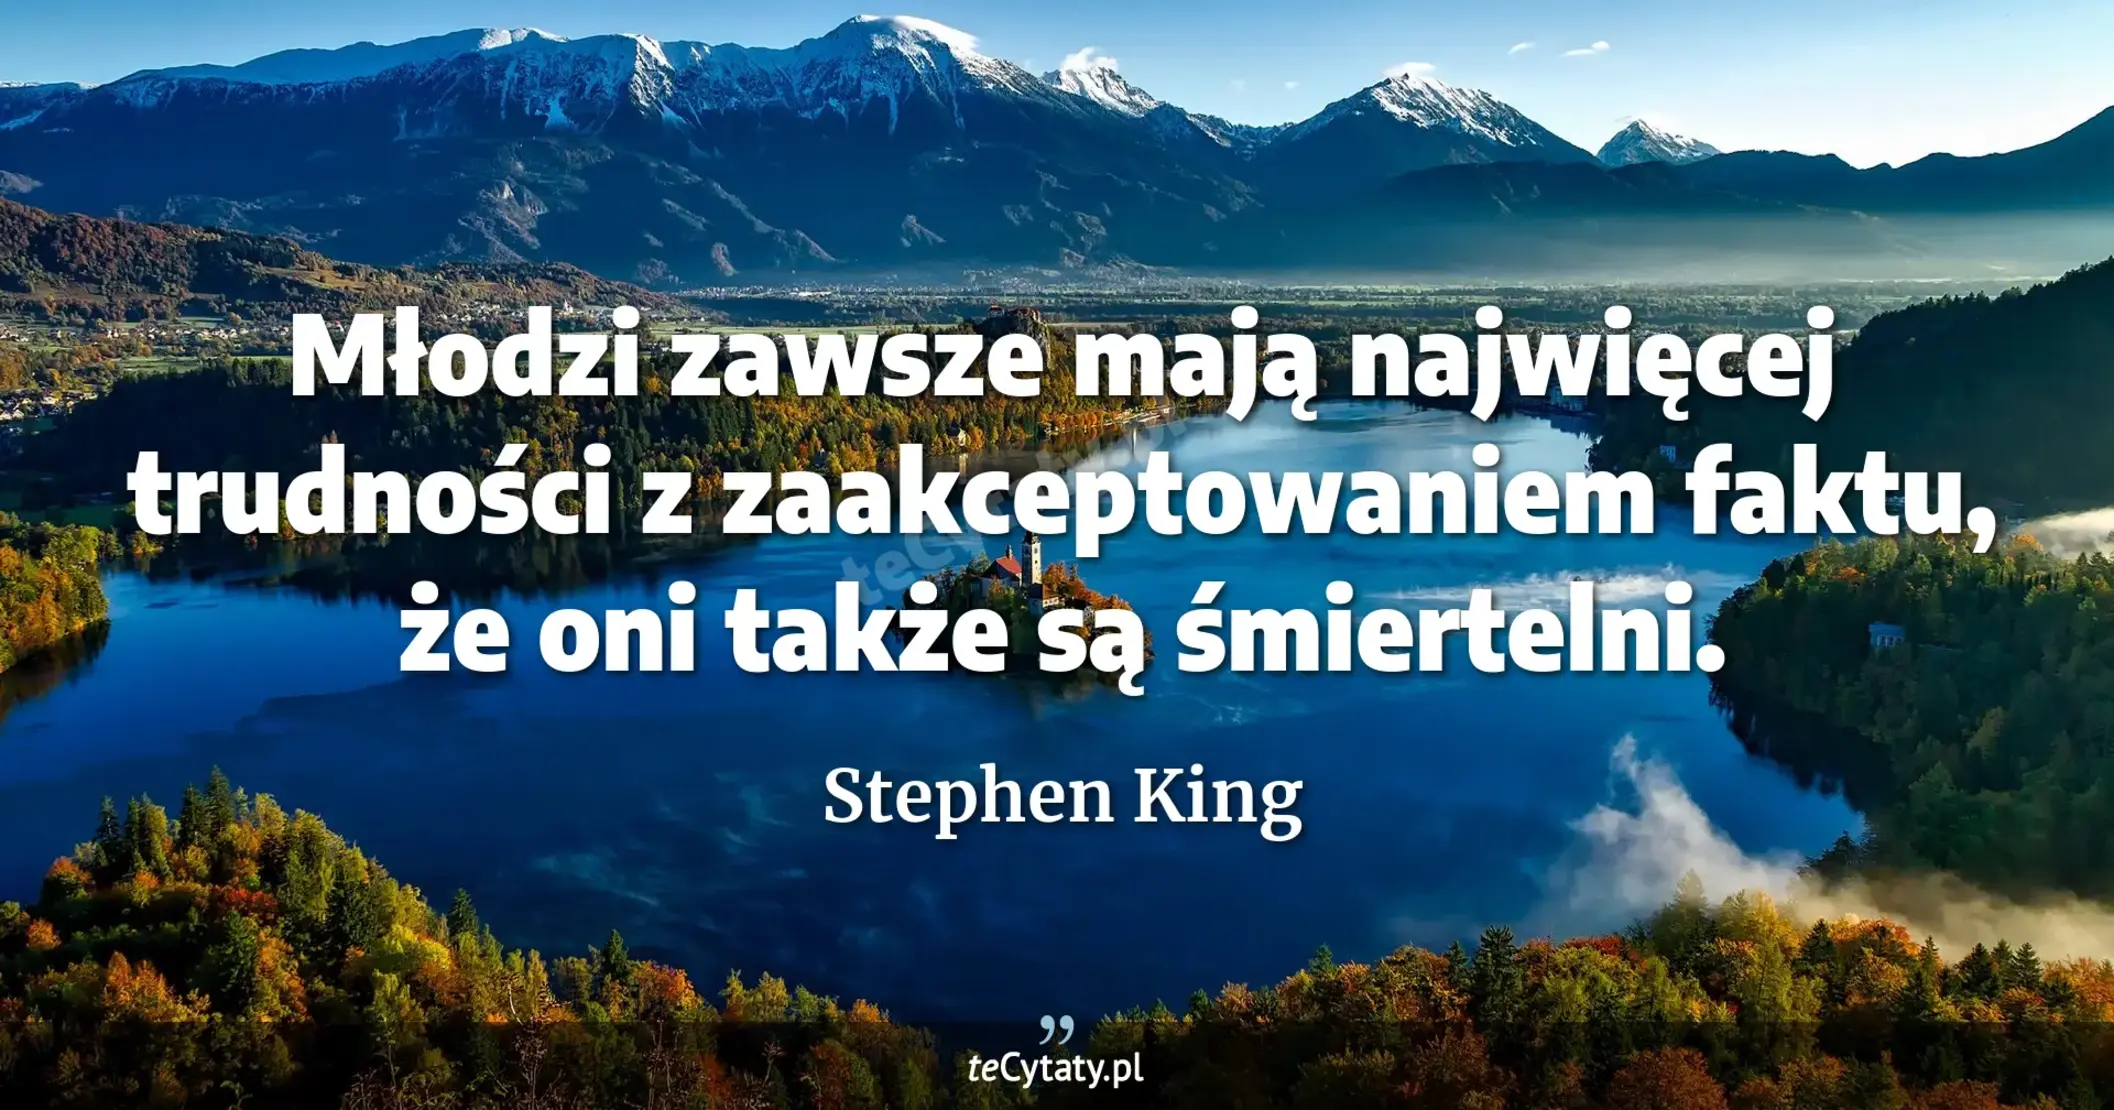 Młodzi zawsze mają najwięcej trudności z zaakceptowaniem faktu, że oni także są śmiertelni. - Stephen King